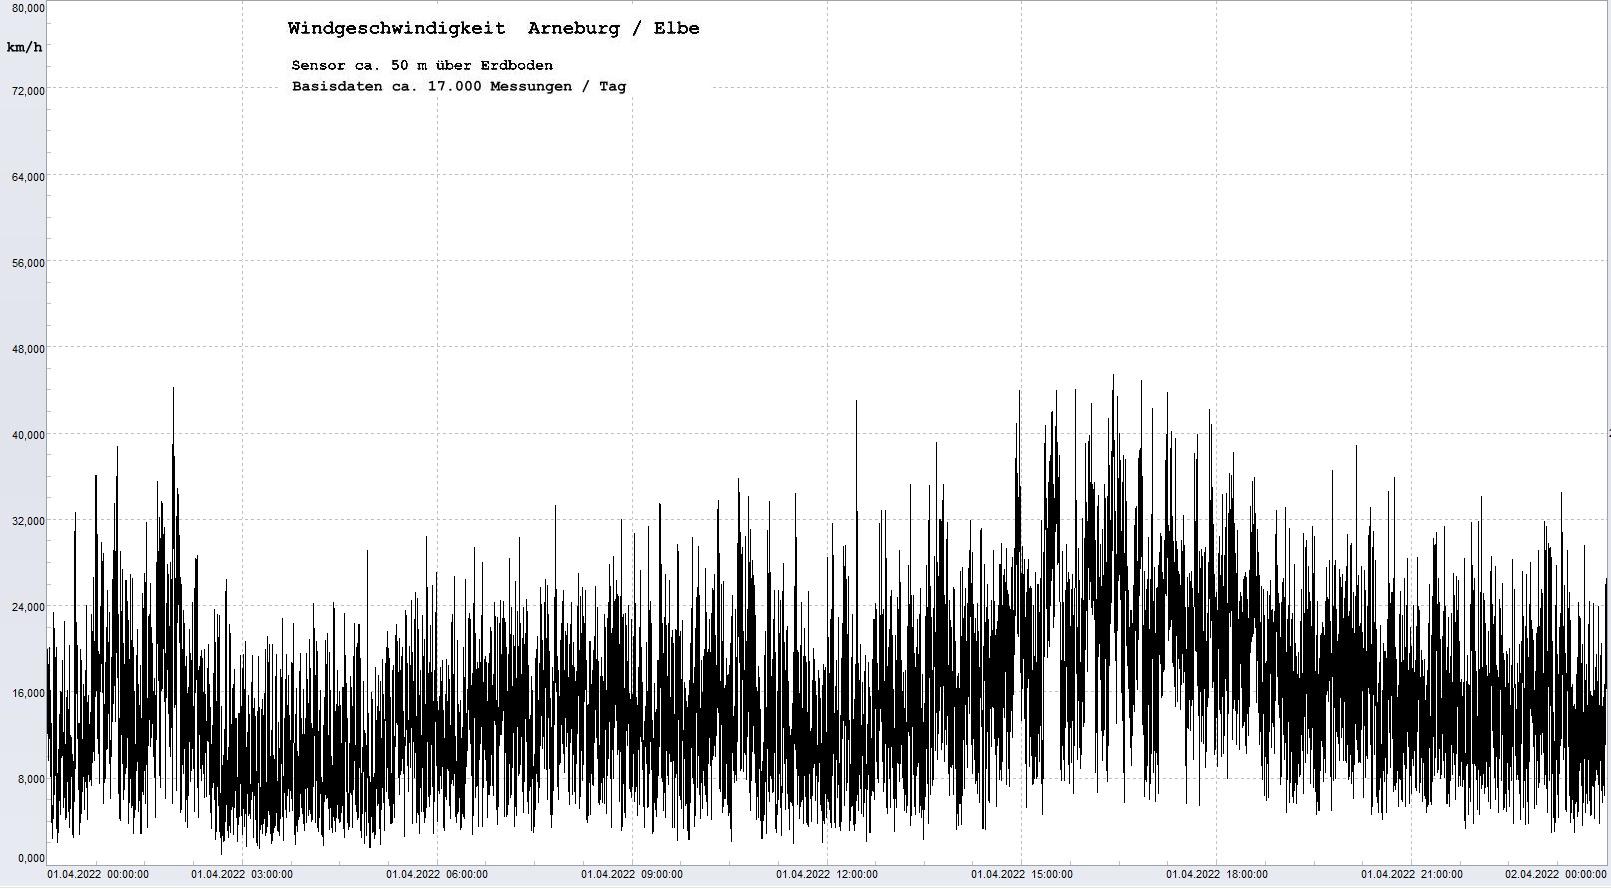 Arneburg Tages-Diagramm Winddaten, 01.04.2023
  Diagramm, Sensor auf Gebude, ca. 50 m ber Erdboden, Basis: 5s-Aufzeichnung